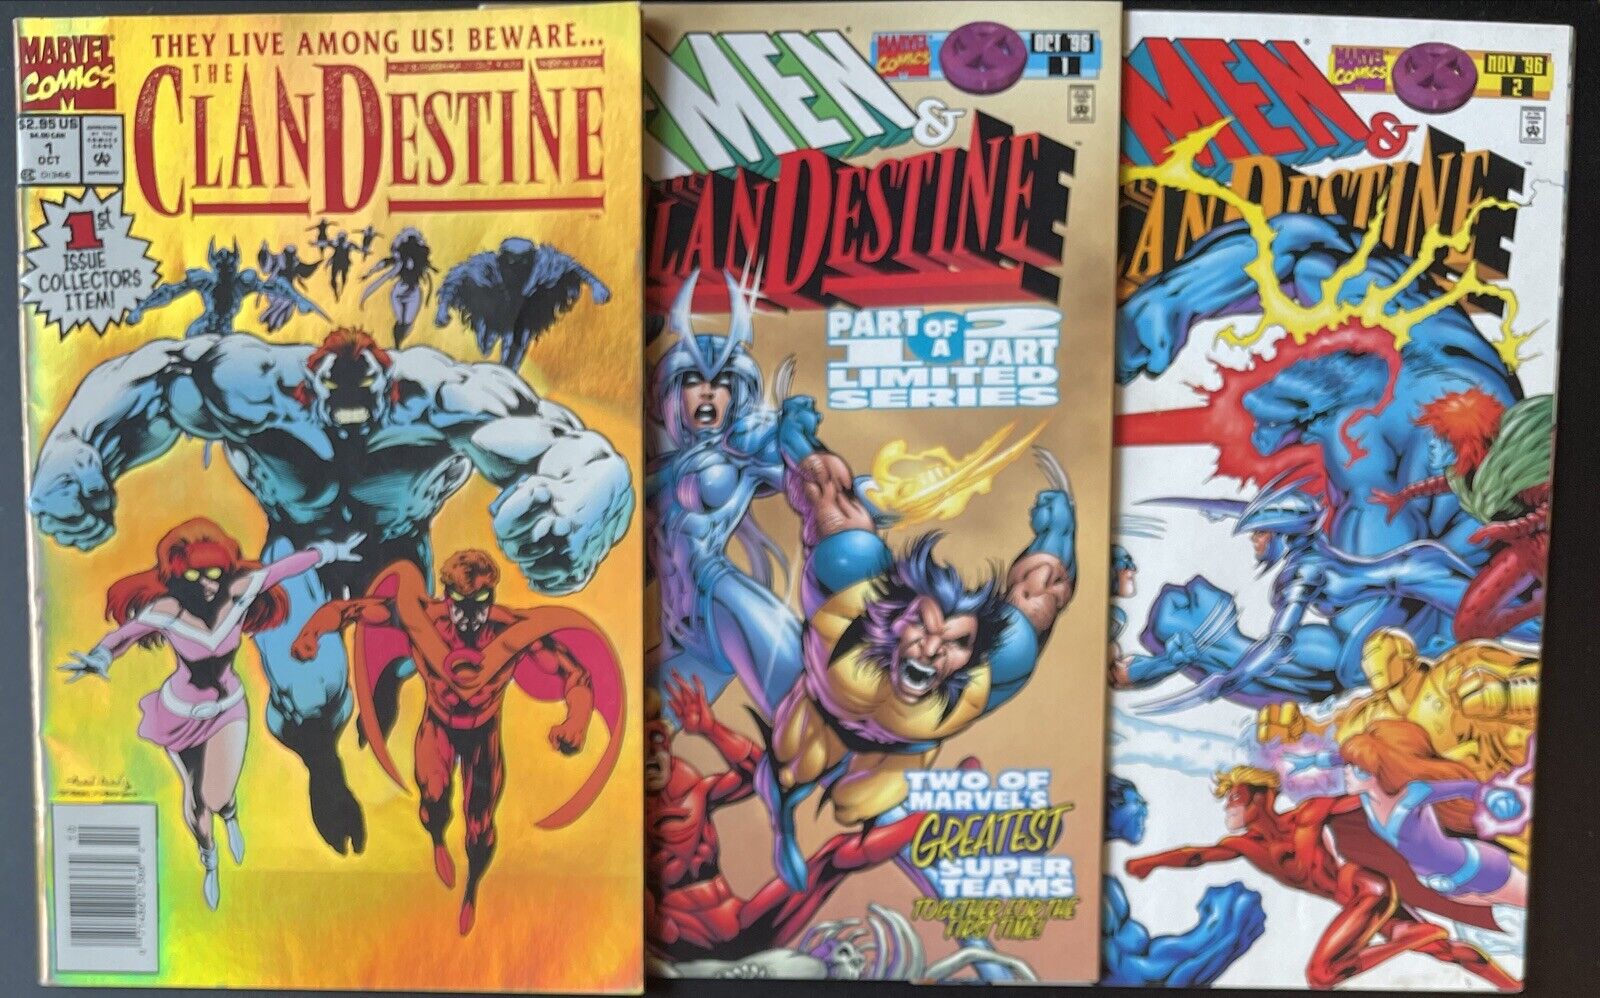 Clandestine #1 + X-Men & Clandestine #1 #2 Complete Set (Marvel 1994/1996)